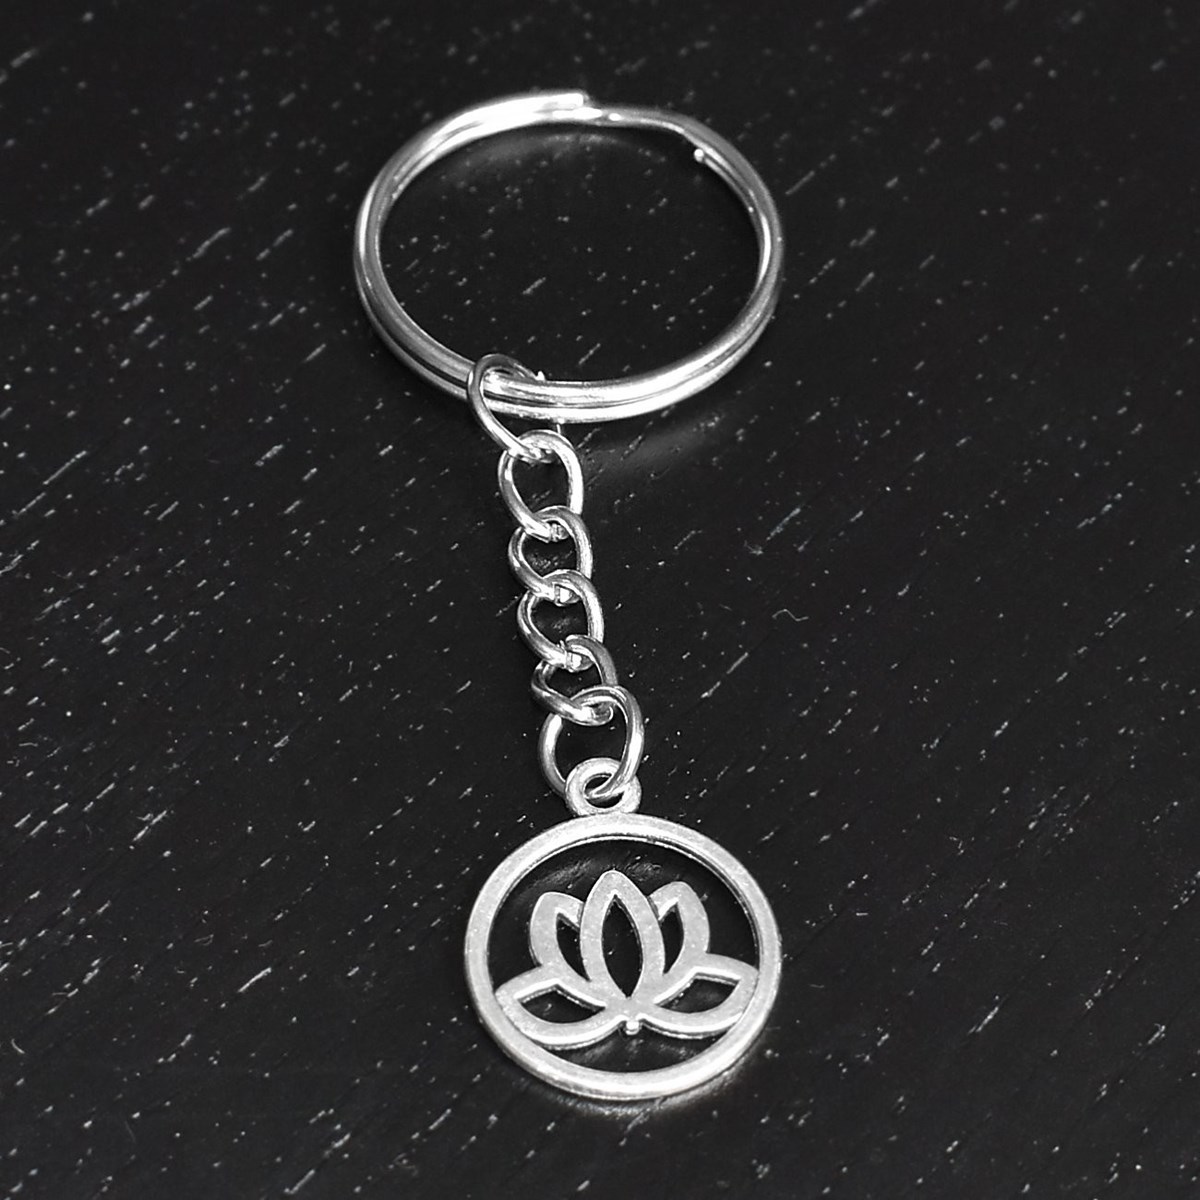 Porte-clés feuille de lotus argenté - vue 4